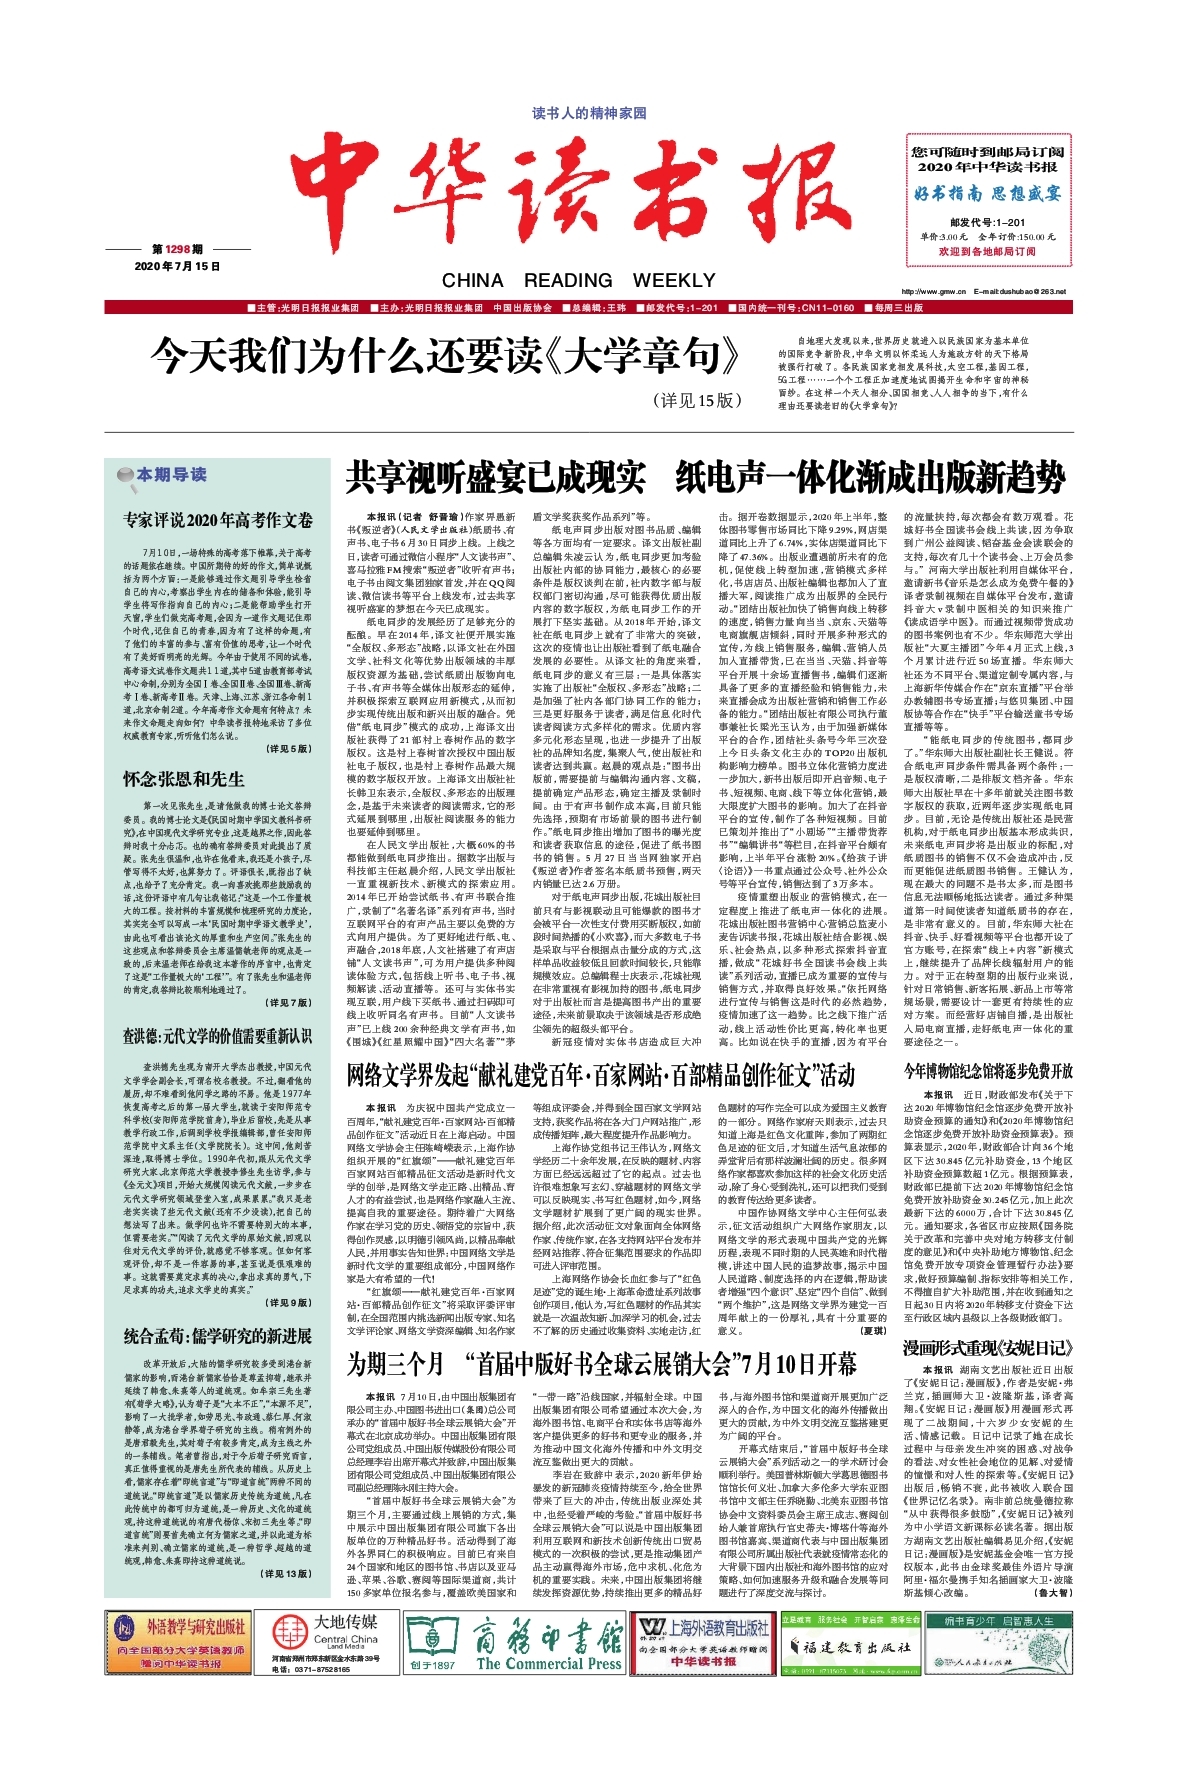 周年,"献礼建党百年·百家网站·百部精品创作征文"活动近日在上海